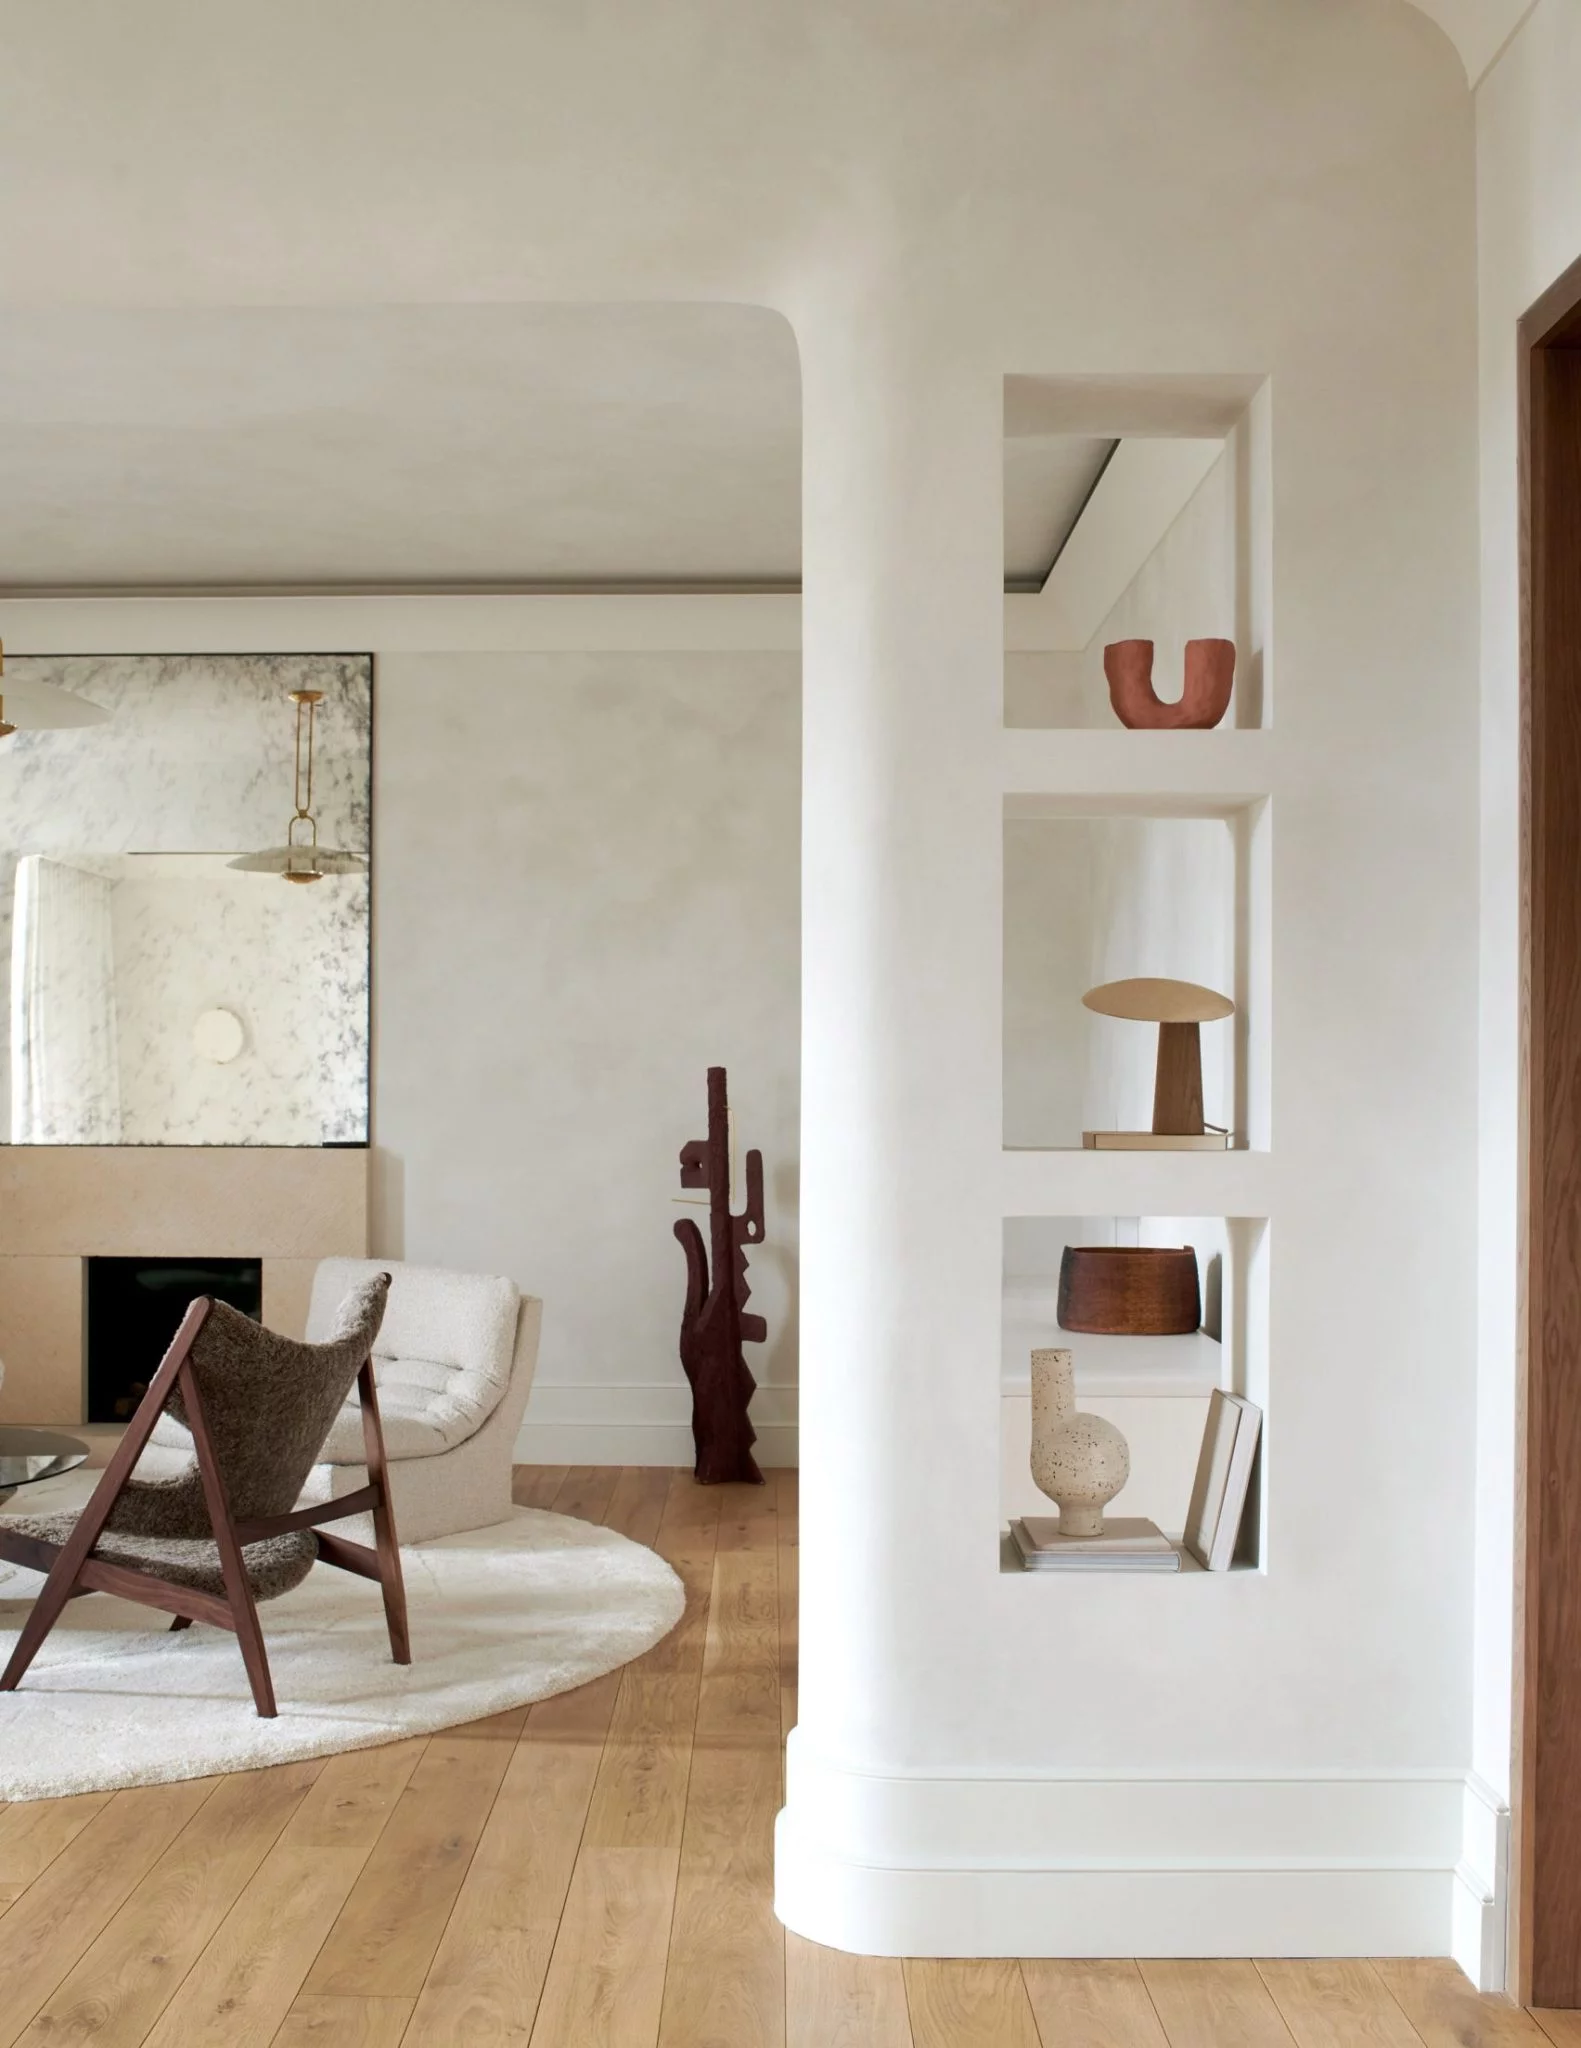 Dit mooie interieurontwerp is ontworpen door Tala Fustok Studio, waarbij een prachtige houten vloer gecombineerd is met naadloze betonlook wanden. | Fotografie: Michael Sinclair